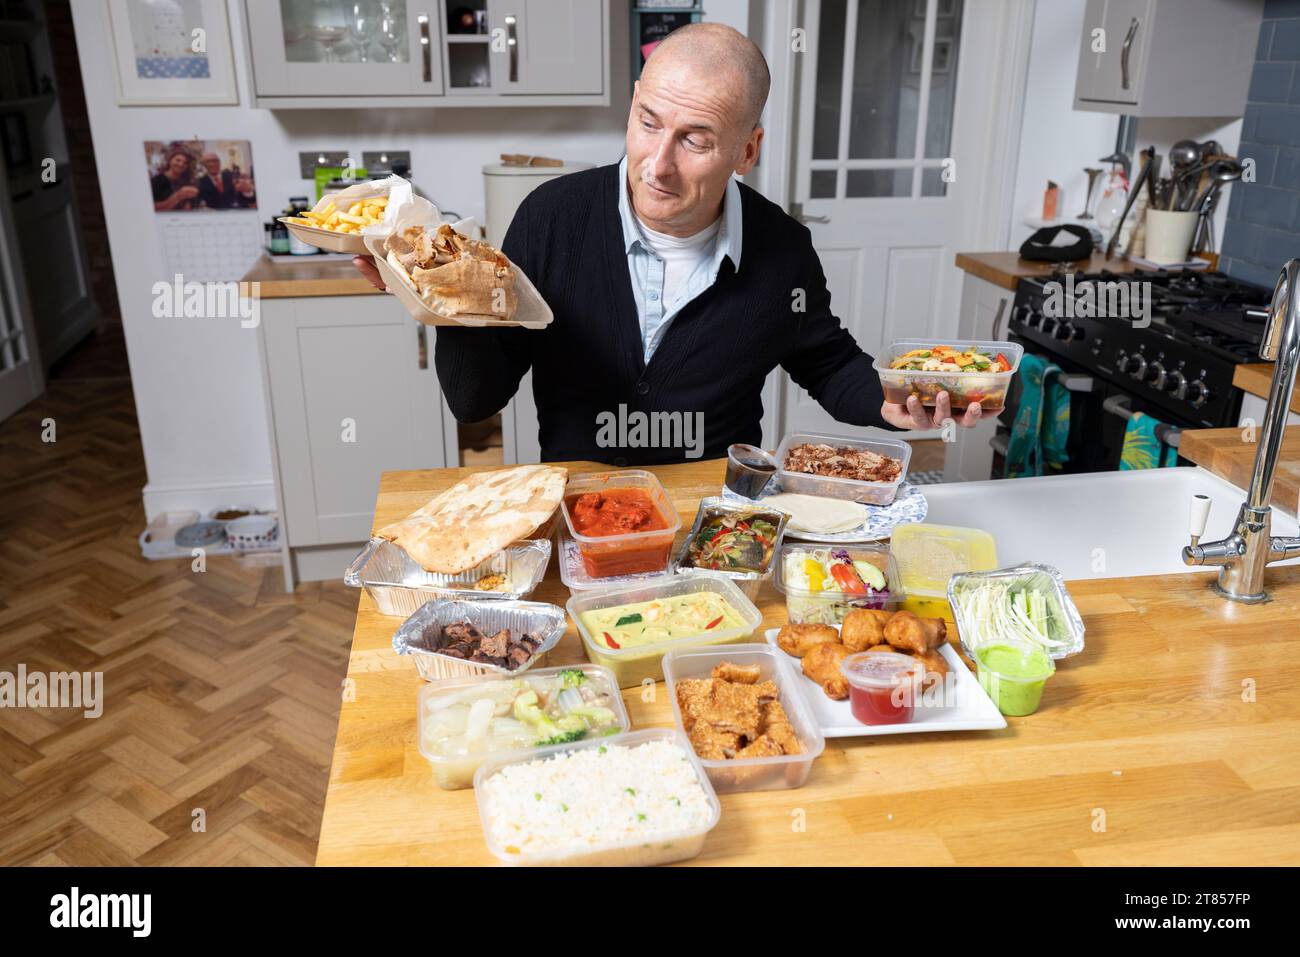 Homme à la maison avec section de plats à emporter sur son plan de travail de cuisine, Londres, Angleterre, Royaume-Uni Banque D'Images